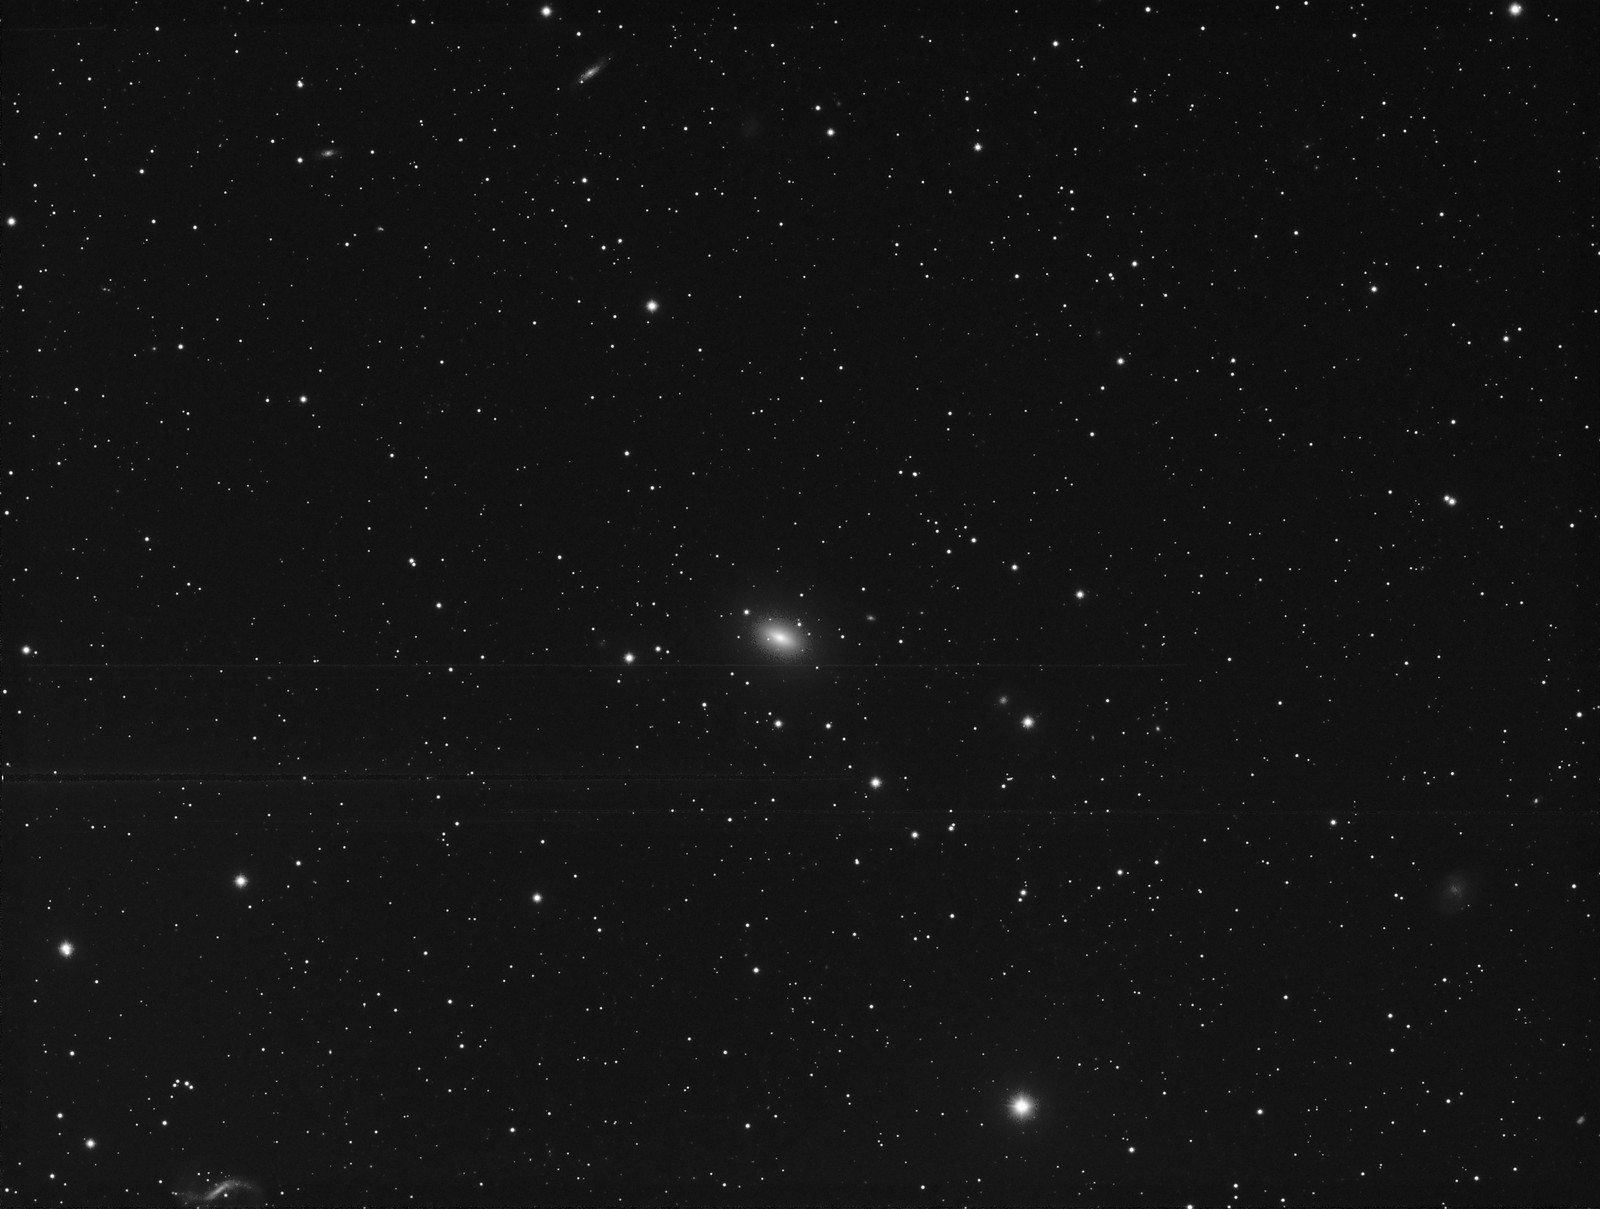 052 - NGC 4697 - Luminance